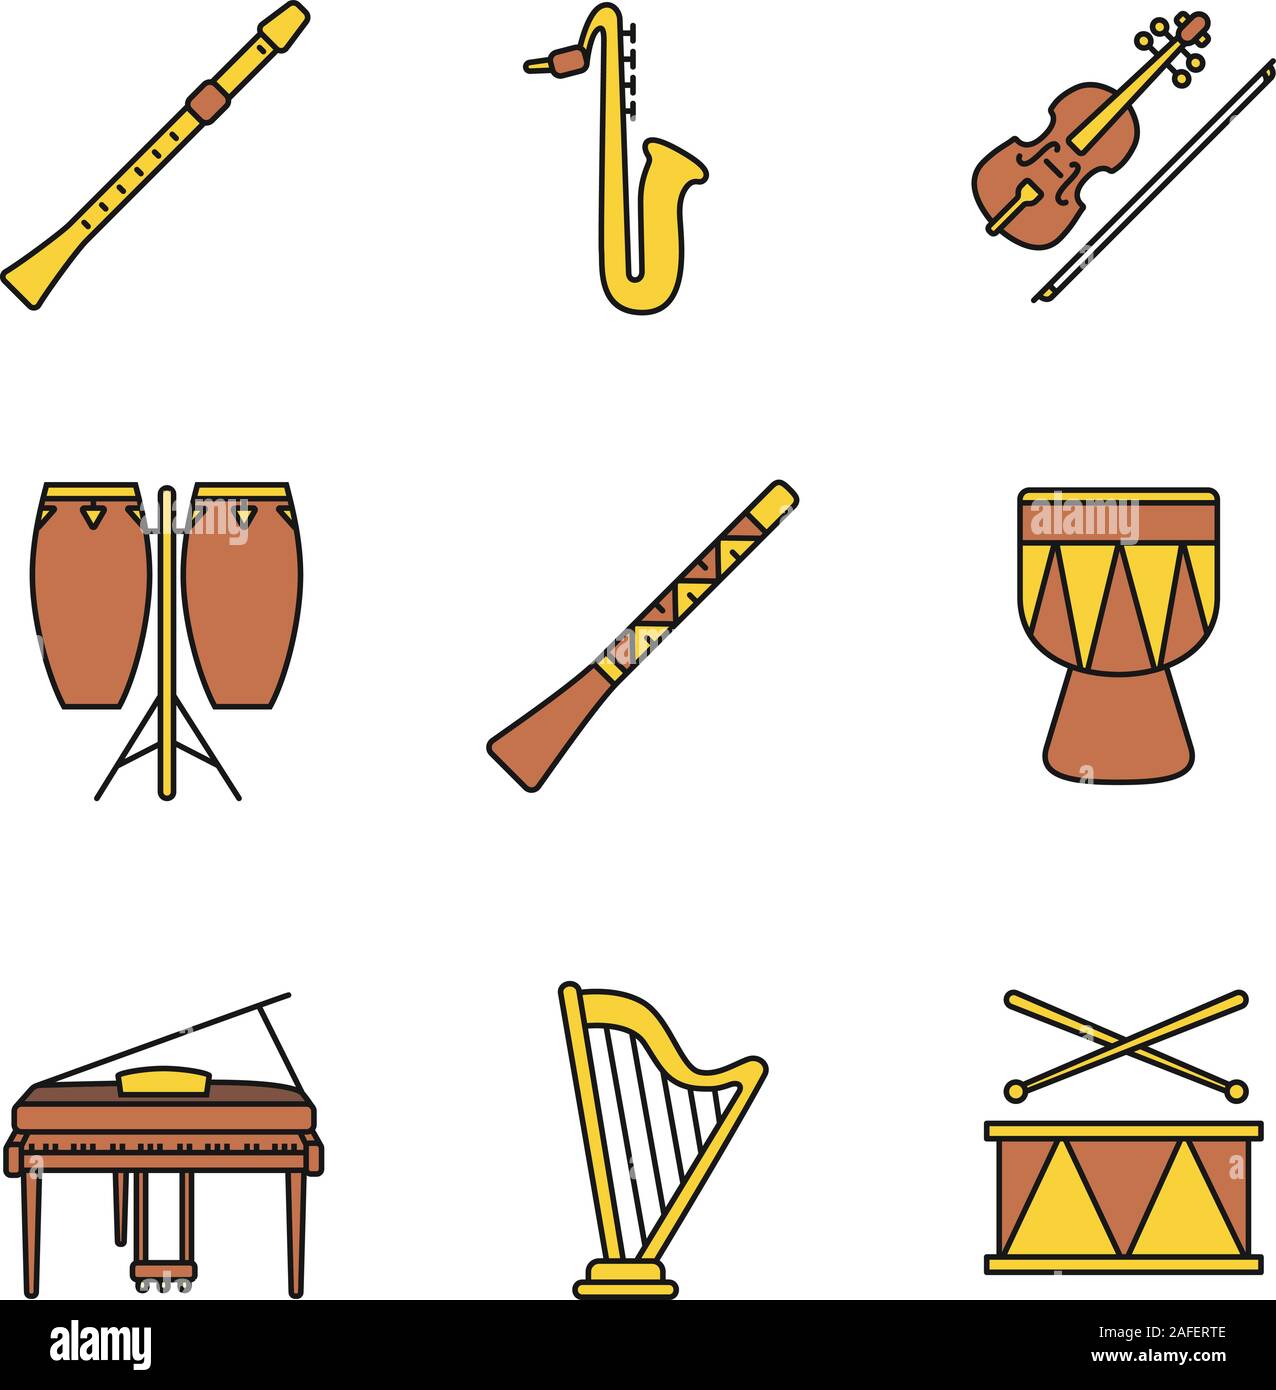 Flauta y tambor Imágenes recortadas de stock - Alamy